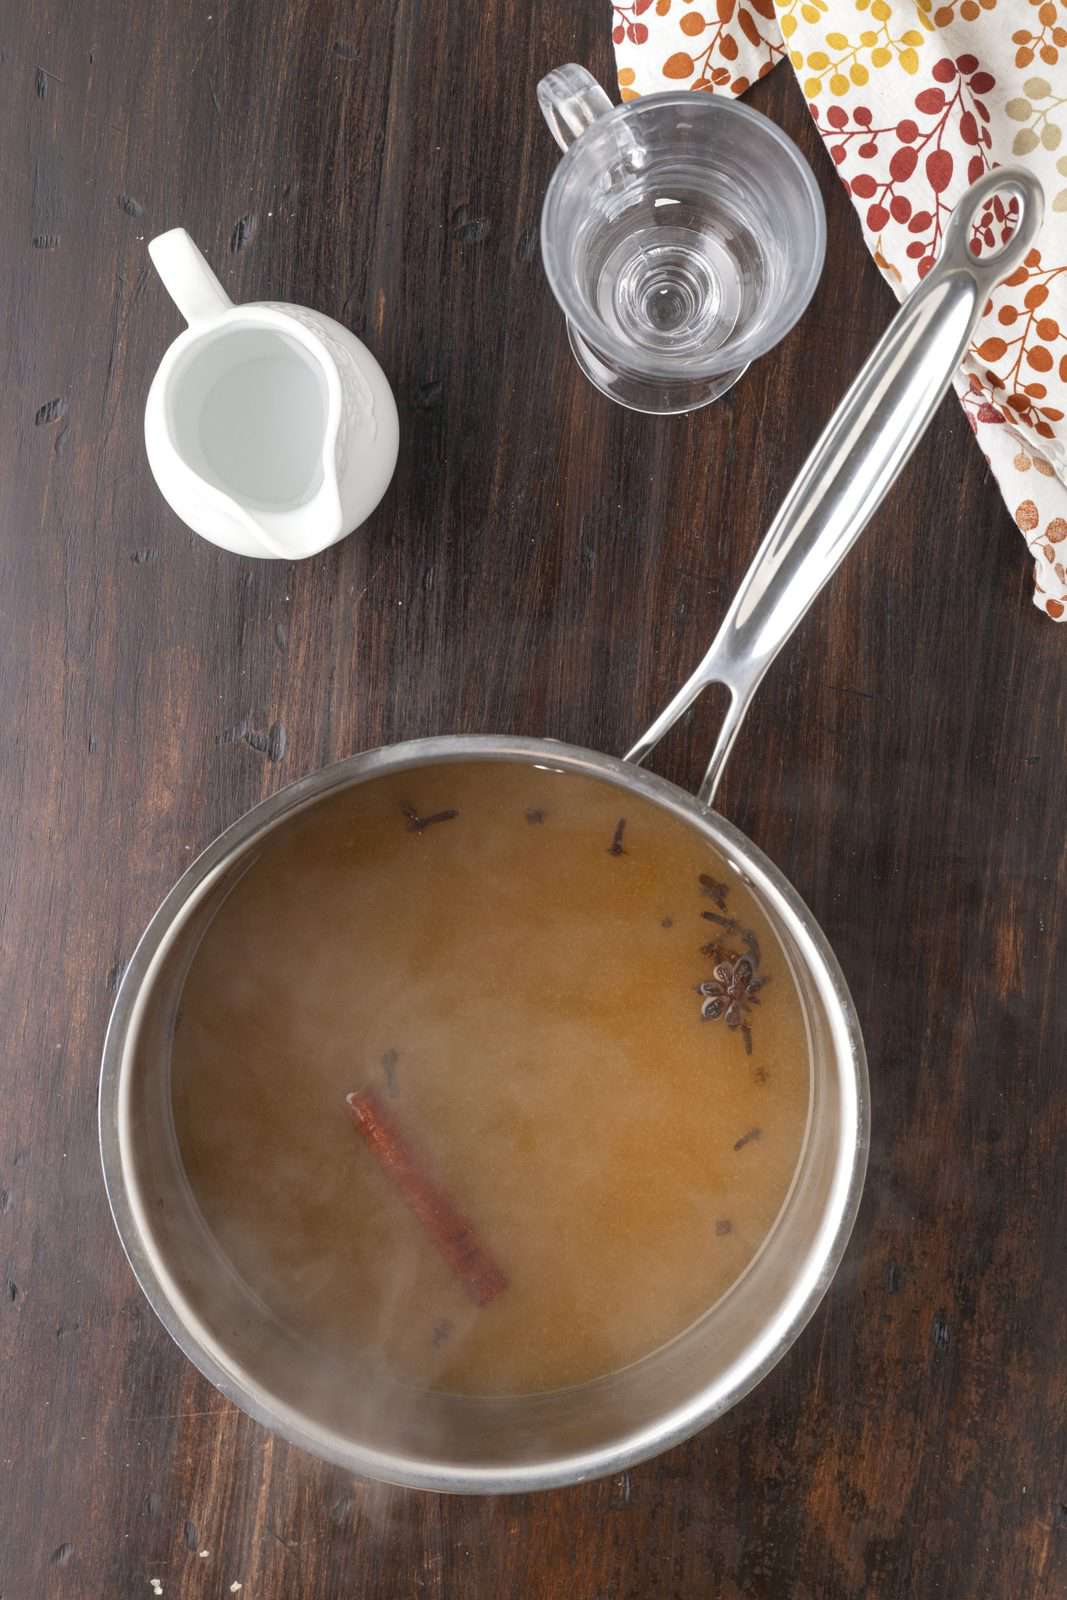 Cocktail ingredients simmering in saucepan.